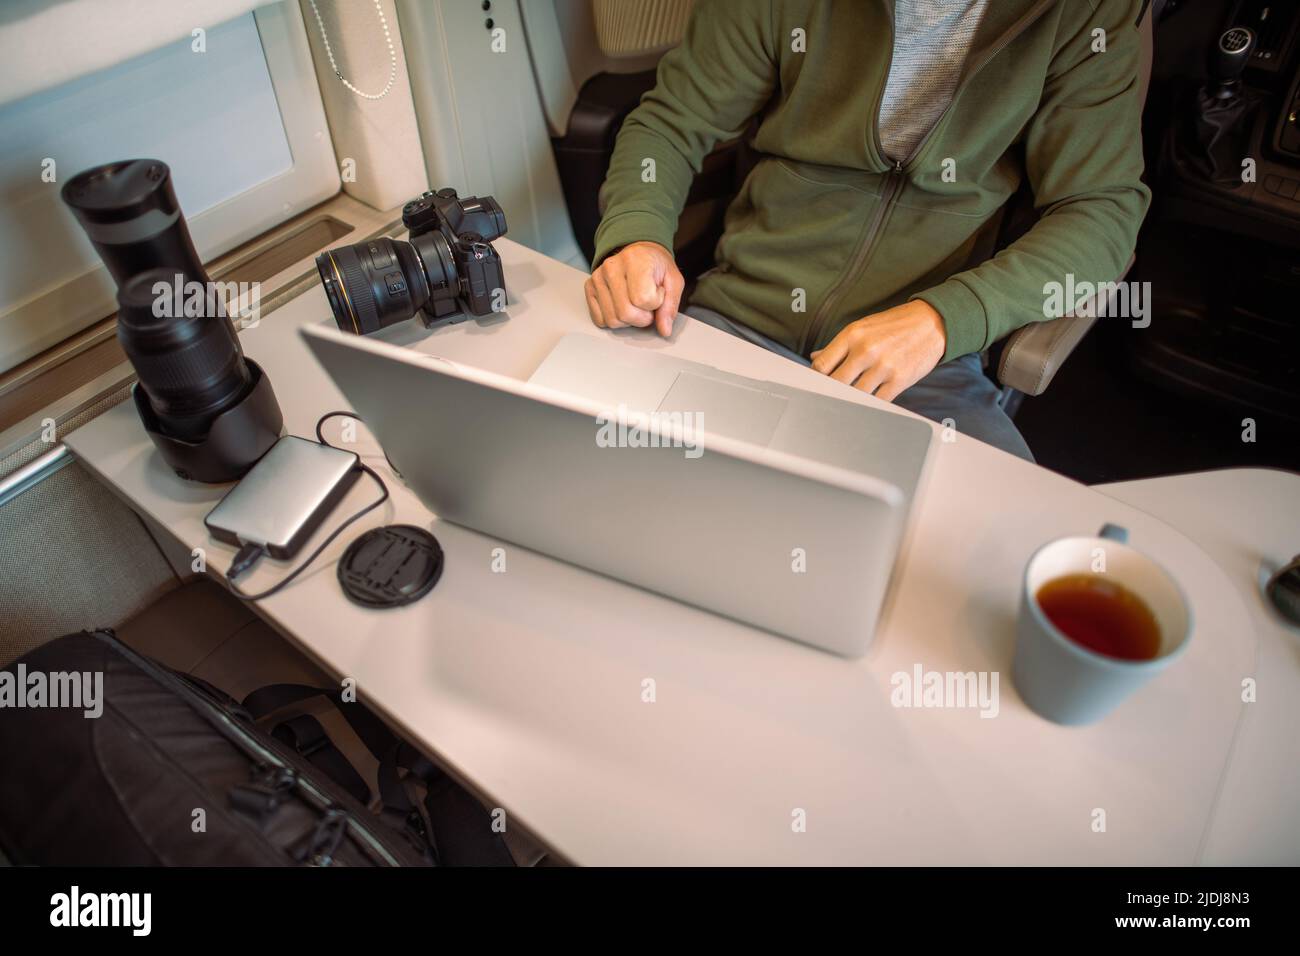 Fotógrafo de viaje transfiriendo sus últimas fotos desde su cámara fotográfica al ordenador portátil sentado en su camioneta durante la estancia de una noche. Foto de stock